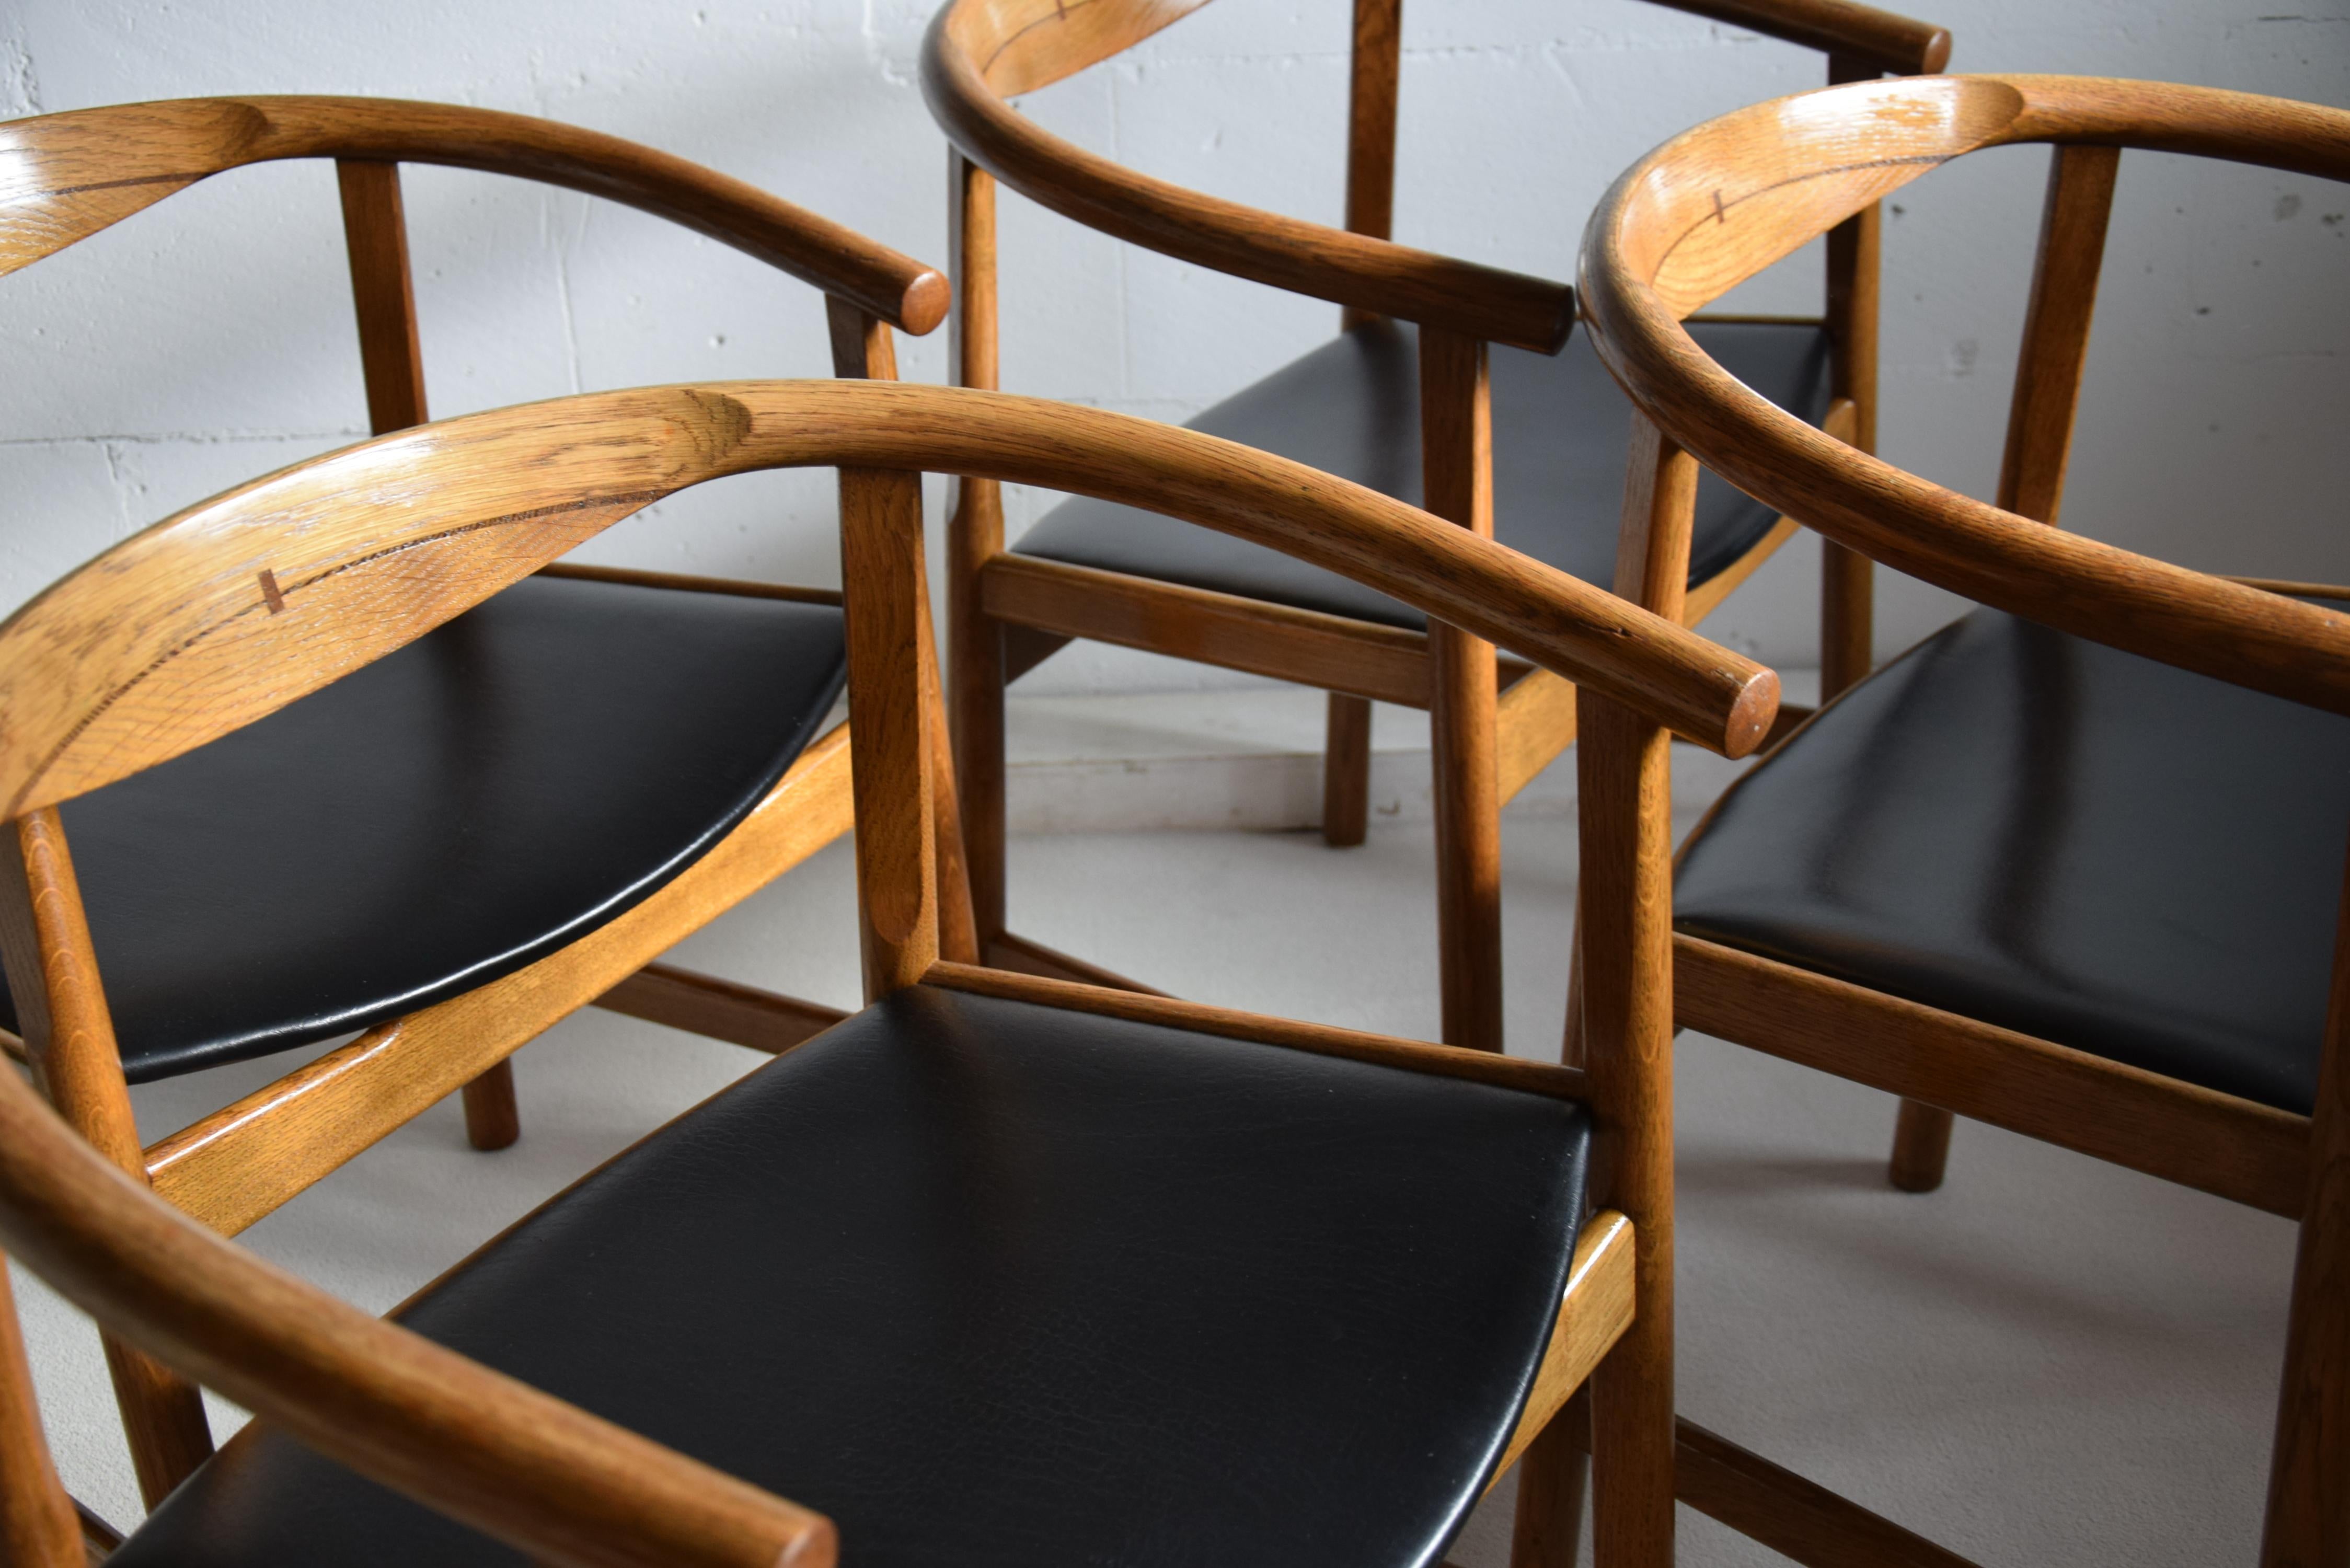 Mid-Century Modern Quatre chaises en chêne et wengé de style moderne du milieu du siècle PP 203 de Hans Wegner en vente